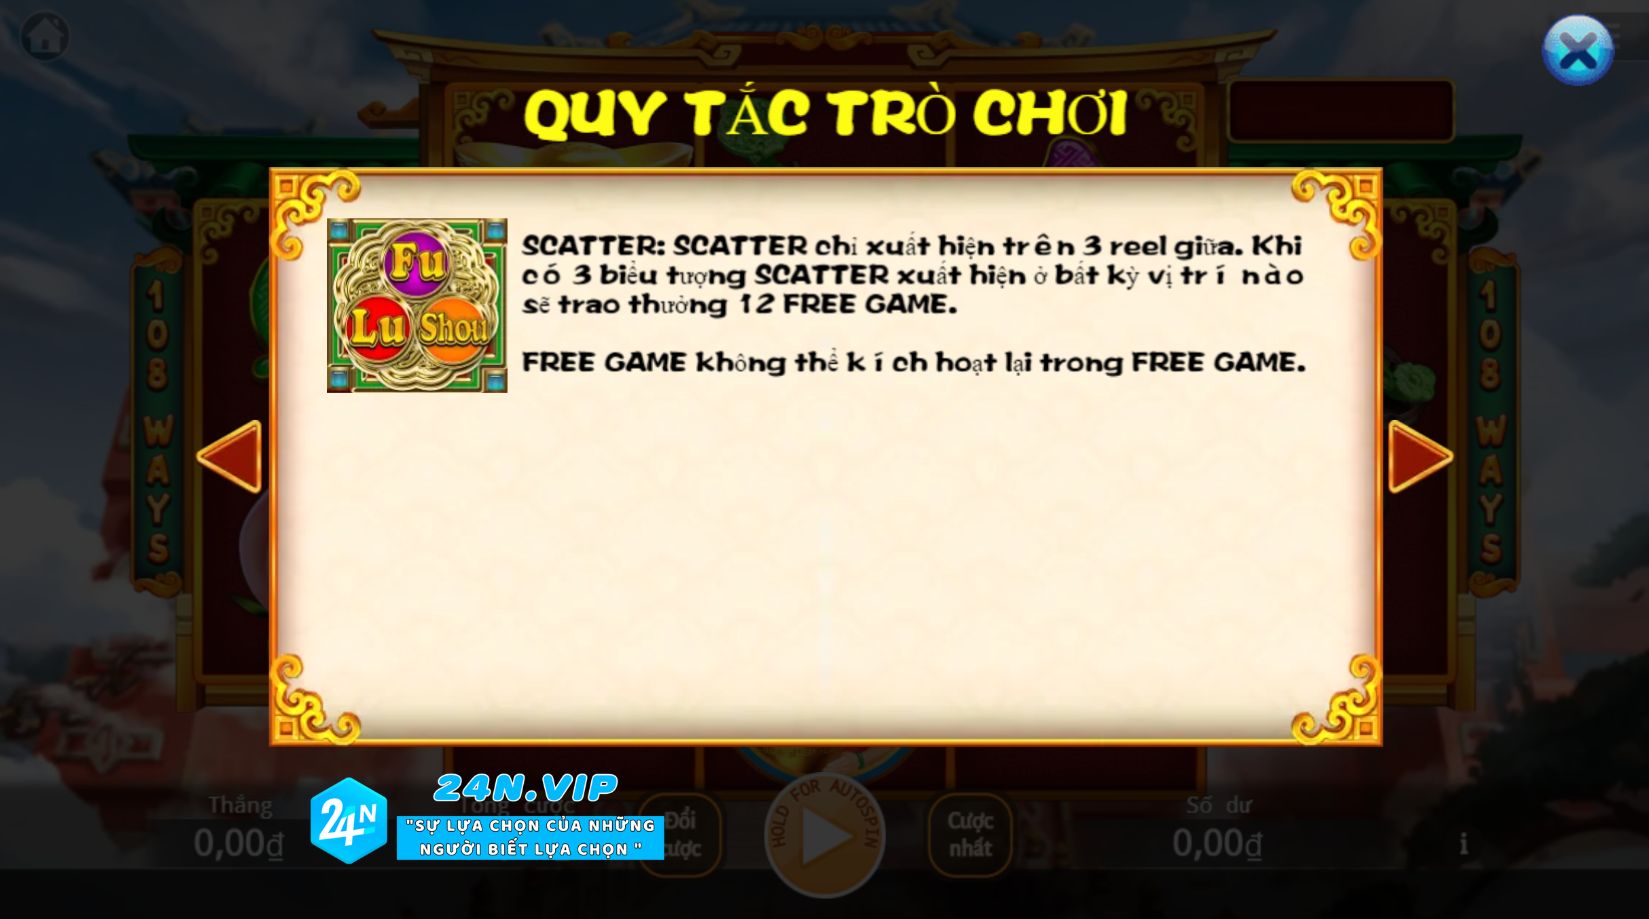 Biểu Tượng Scatter và Free Game trong Slot Fu Lu Shou tại Nhà Cái 24N